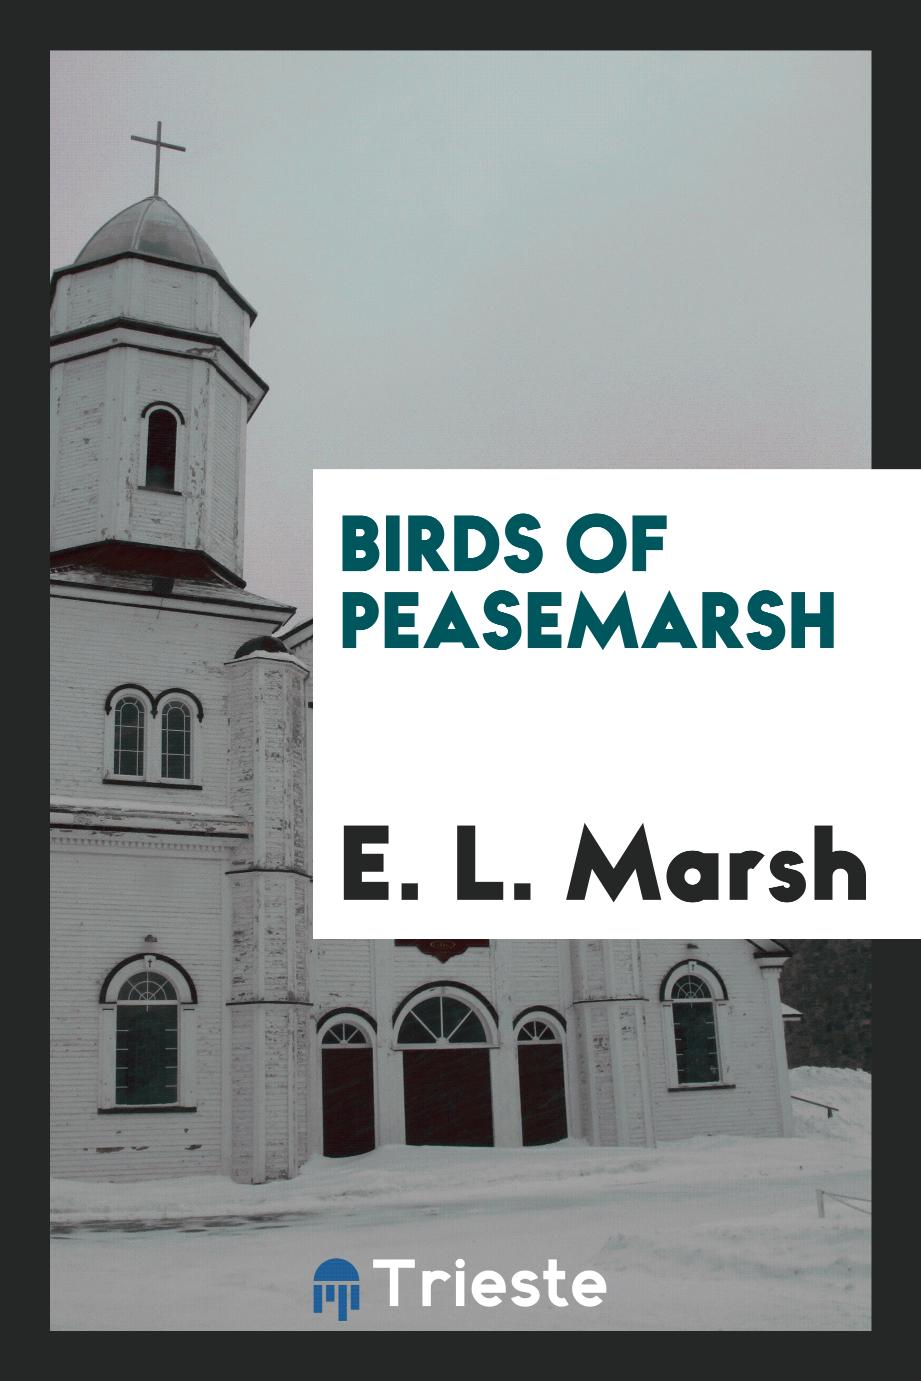 Birds of Peasemarsh